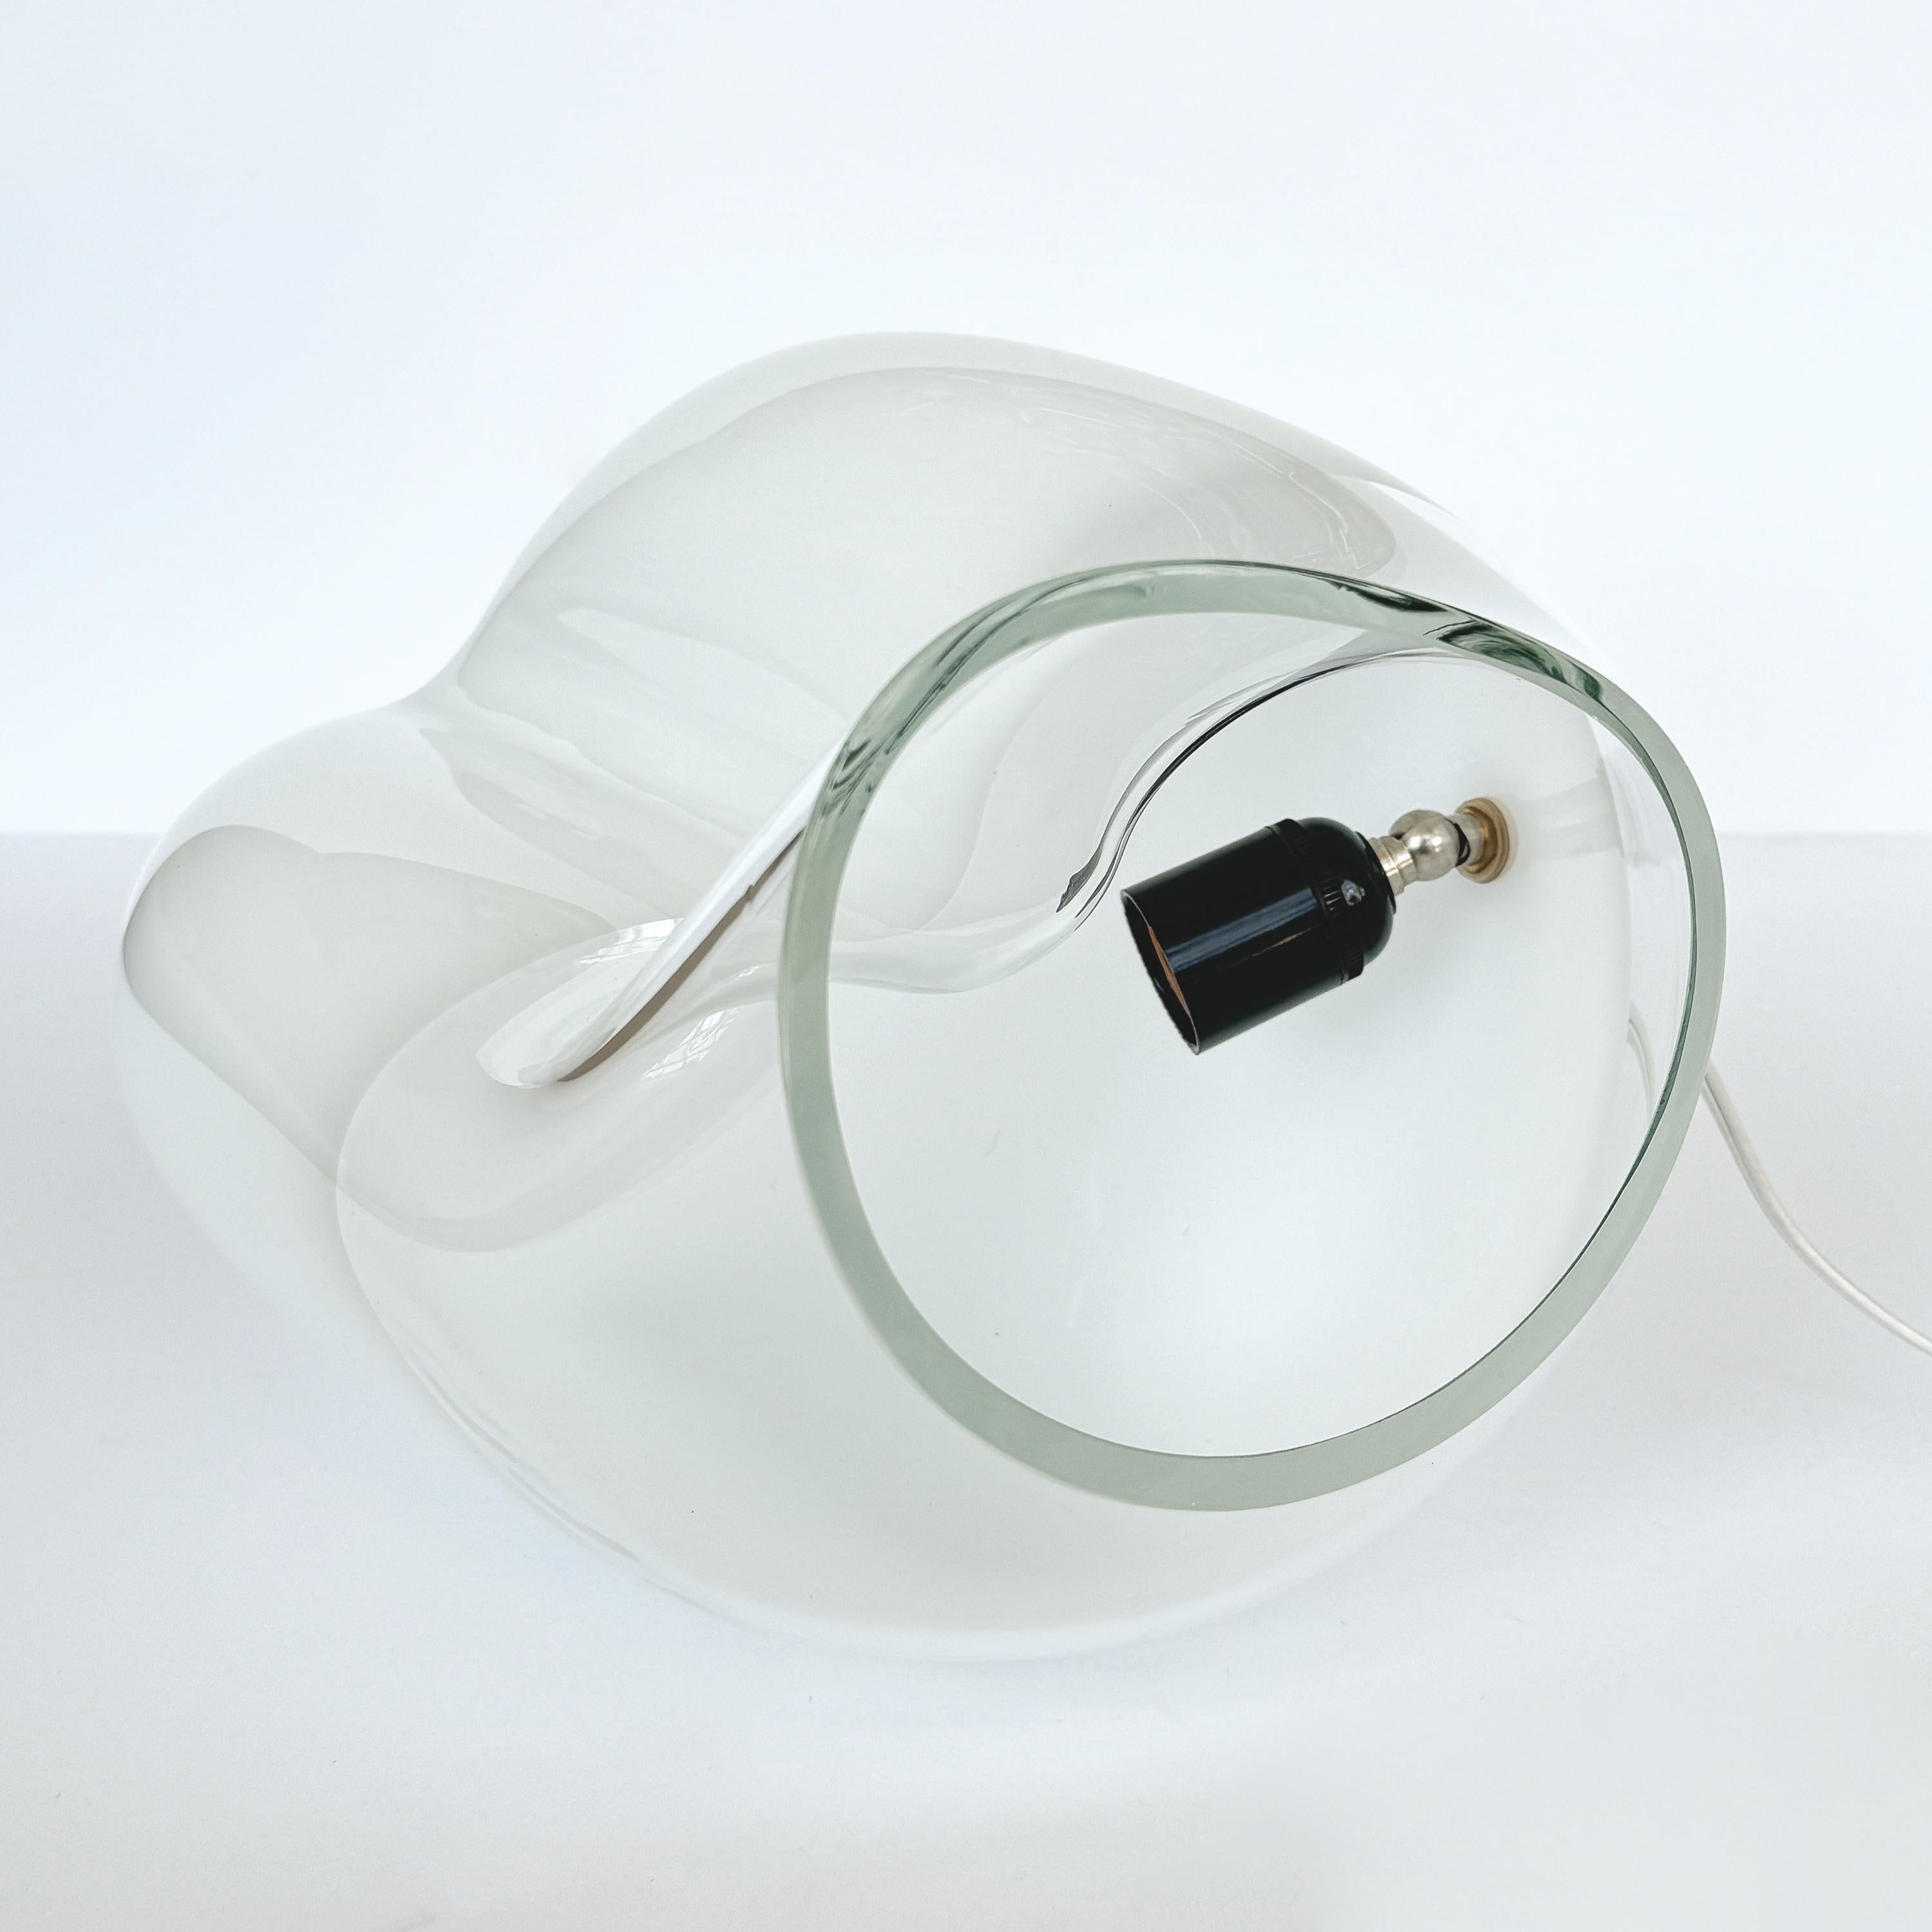 Vistosi Zaghetto Table Lamp Model L282 by Gino Vistosi For Sale 4